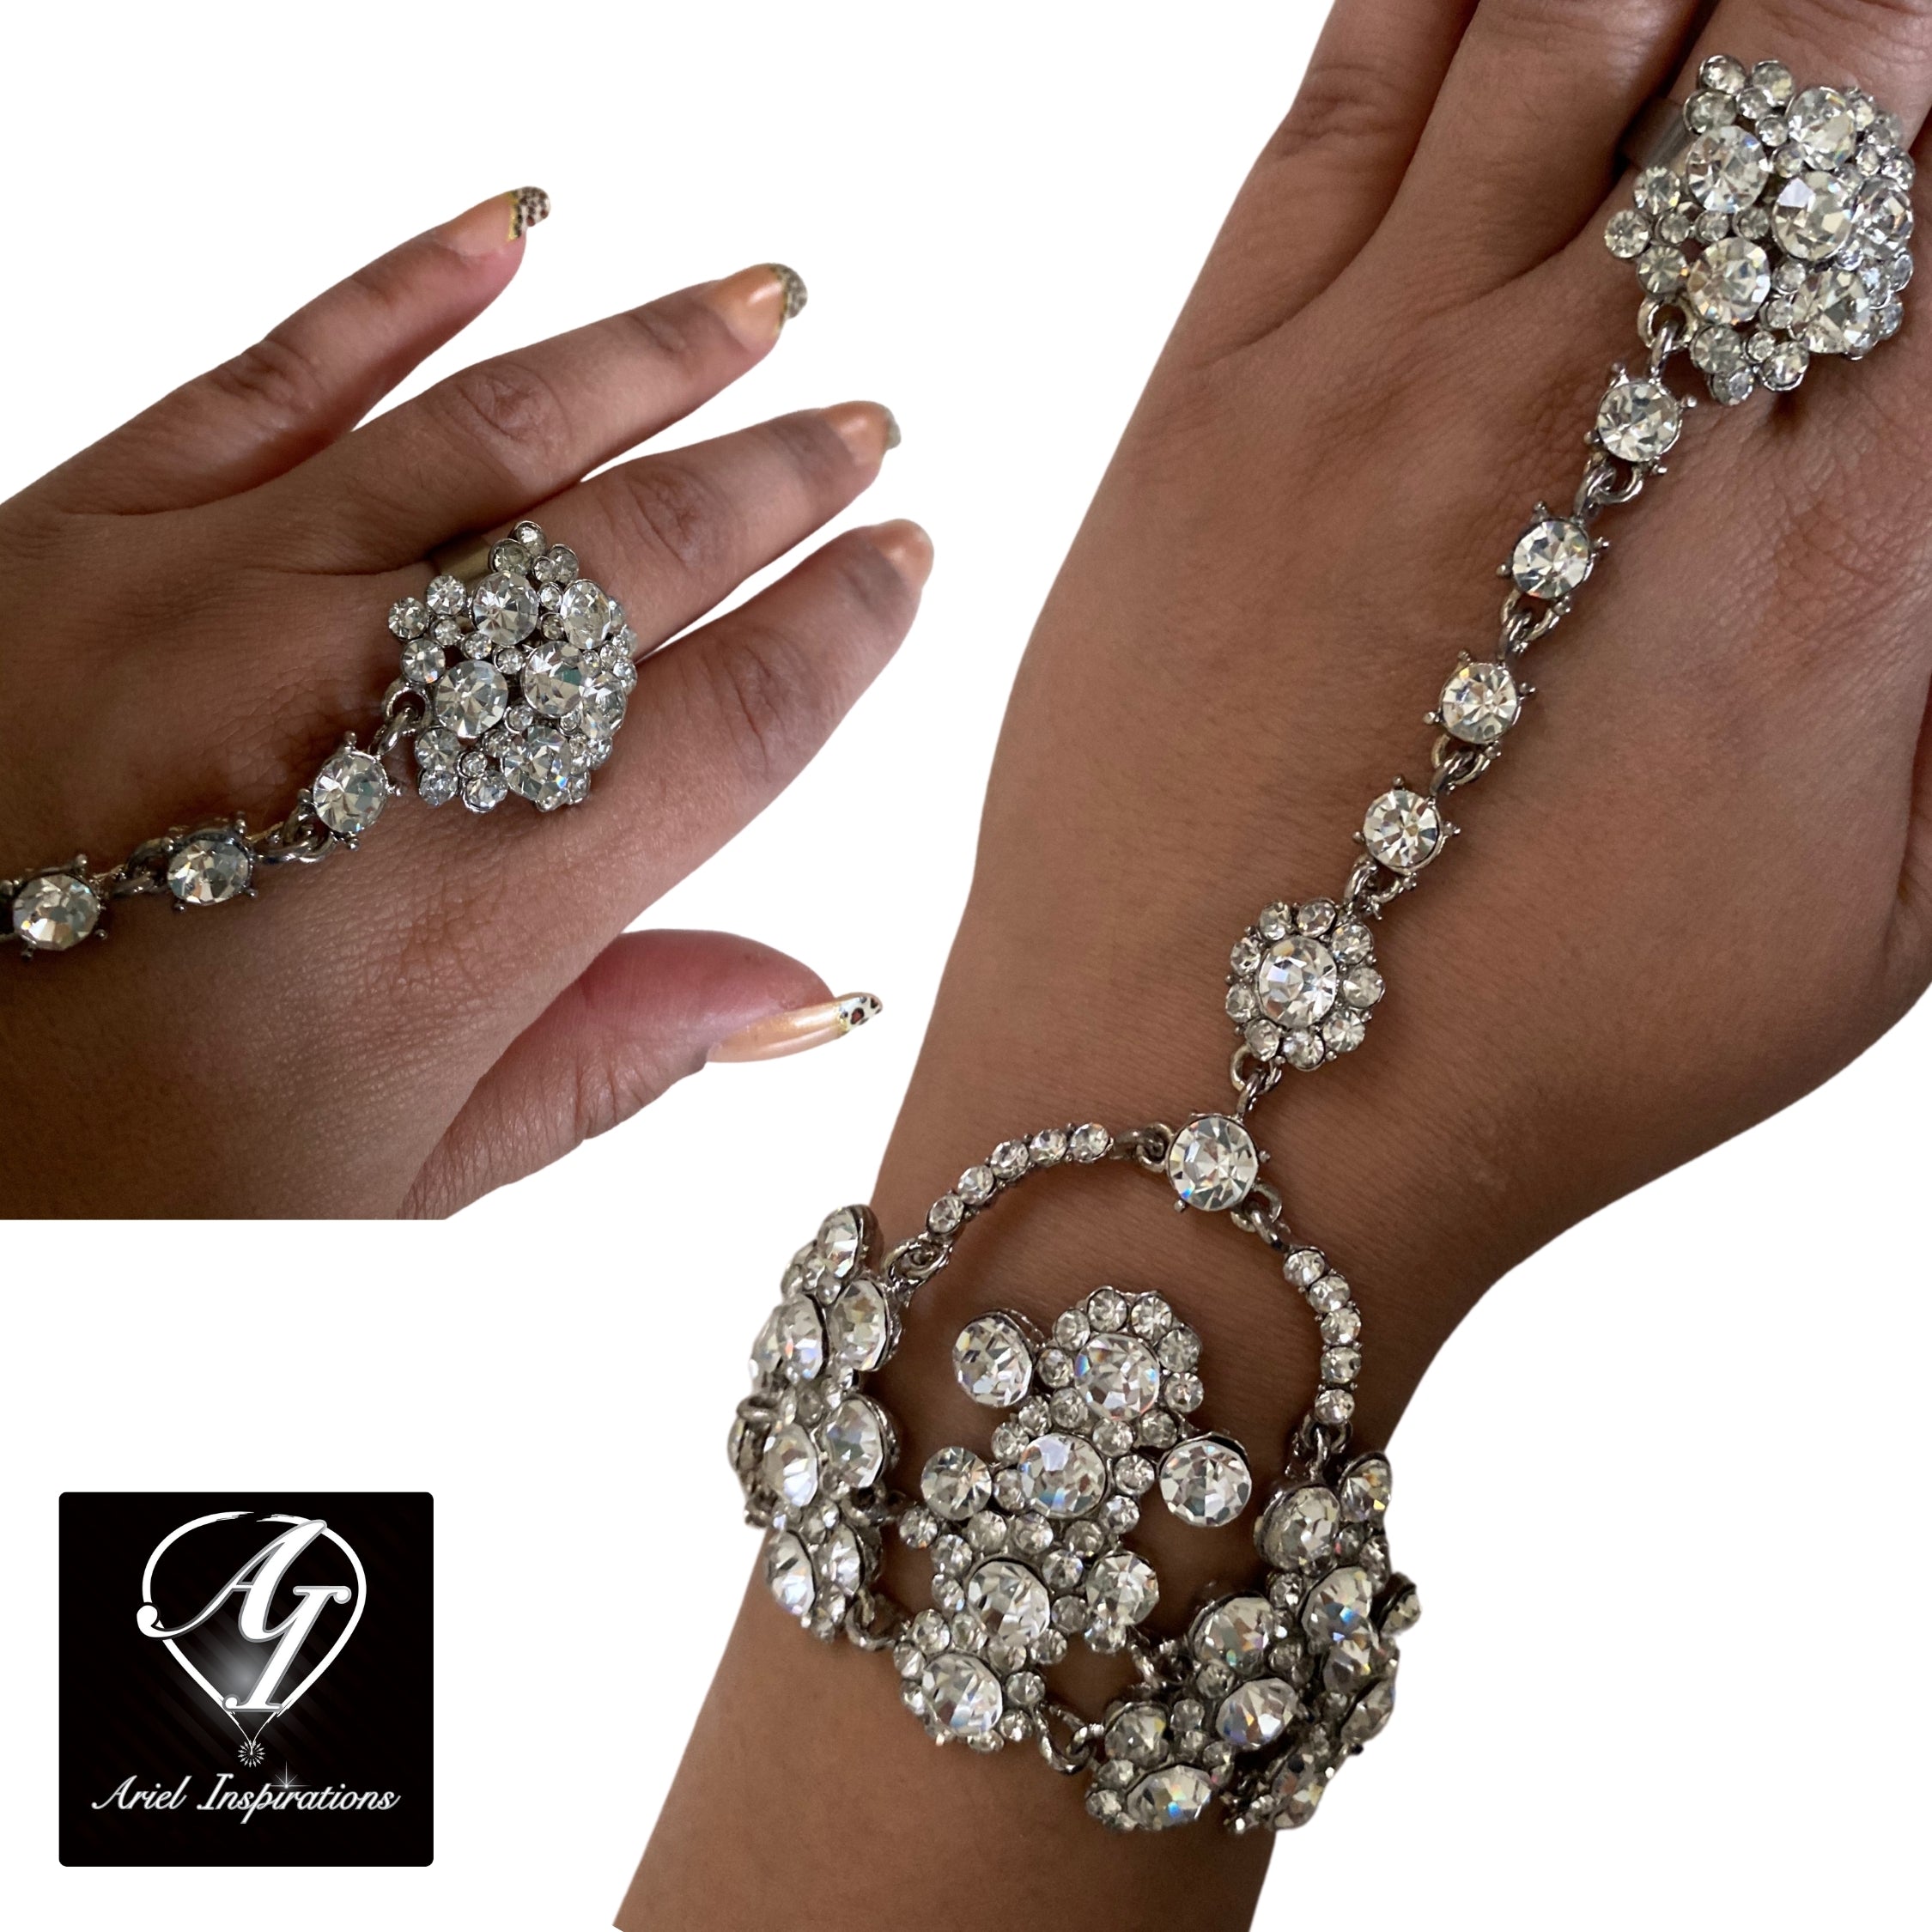 Swarovski Crystal Ring Bracelet - Romantic Silver-Wedding/Party Jewelry- Woman's Jewelry